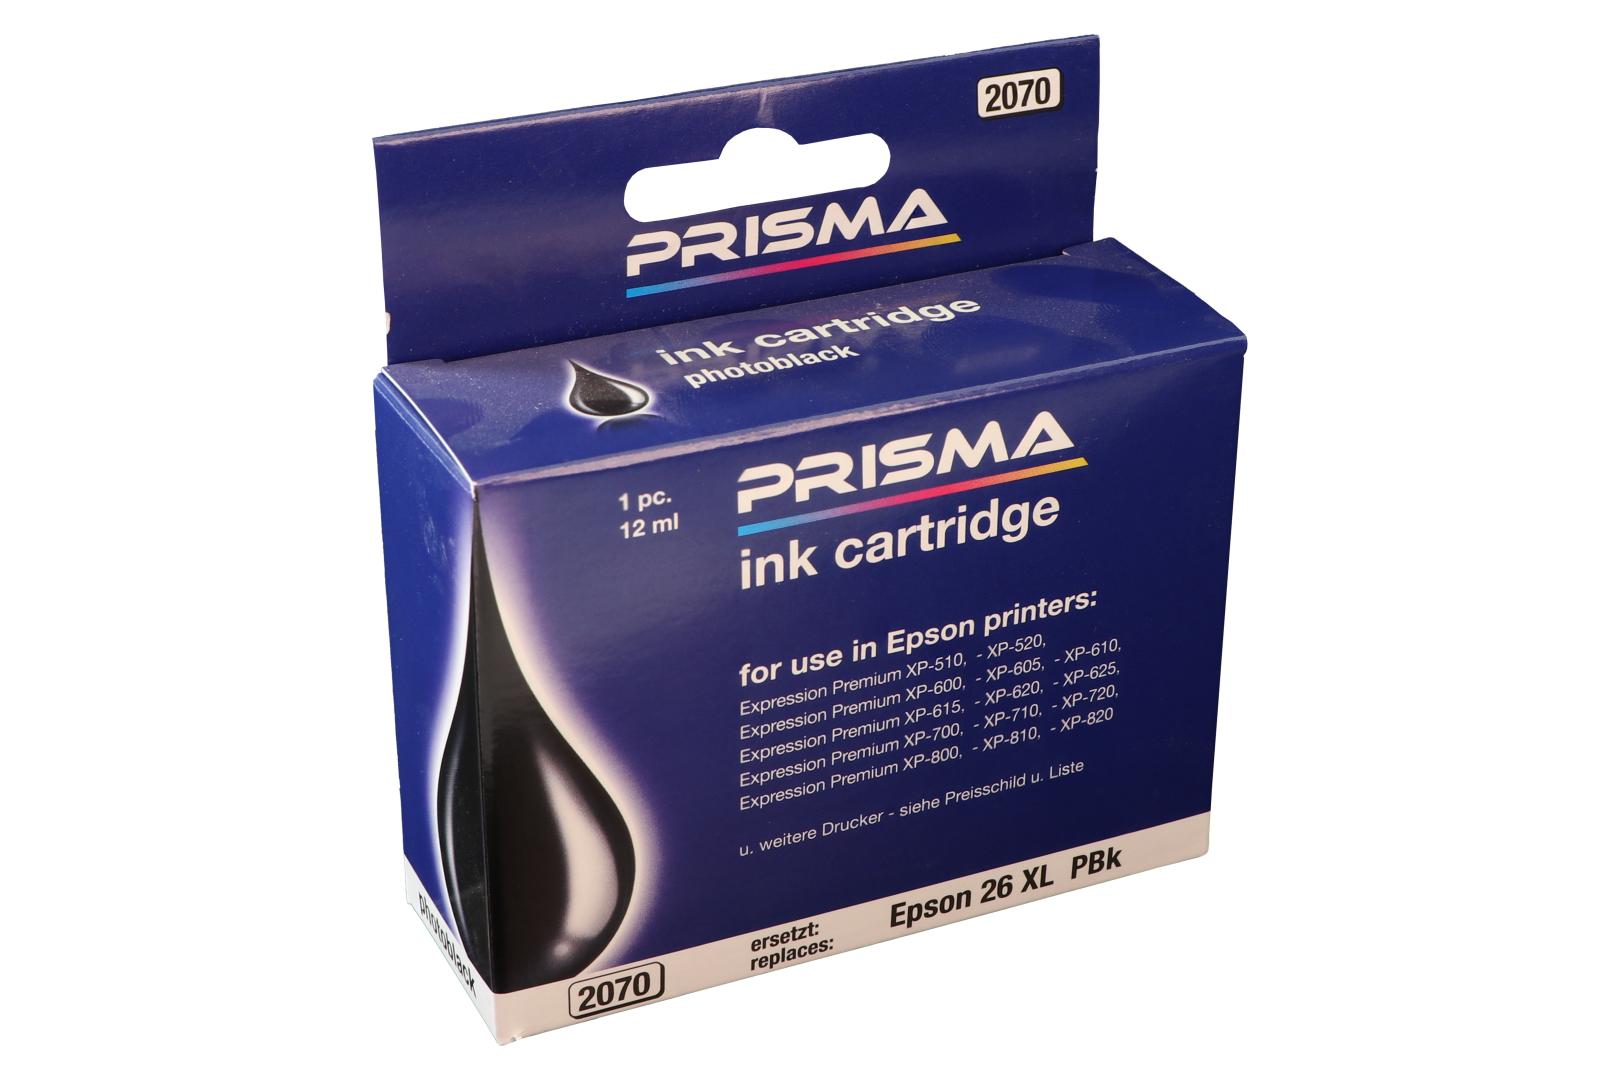 PRISMA 2070 Druckerpatrone für Epson Tintenstrahldrucker, schwarz, 12 ml